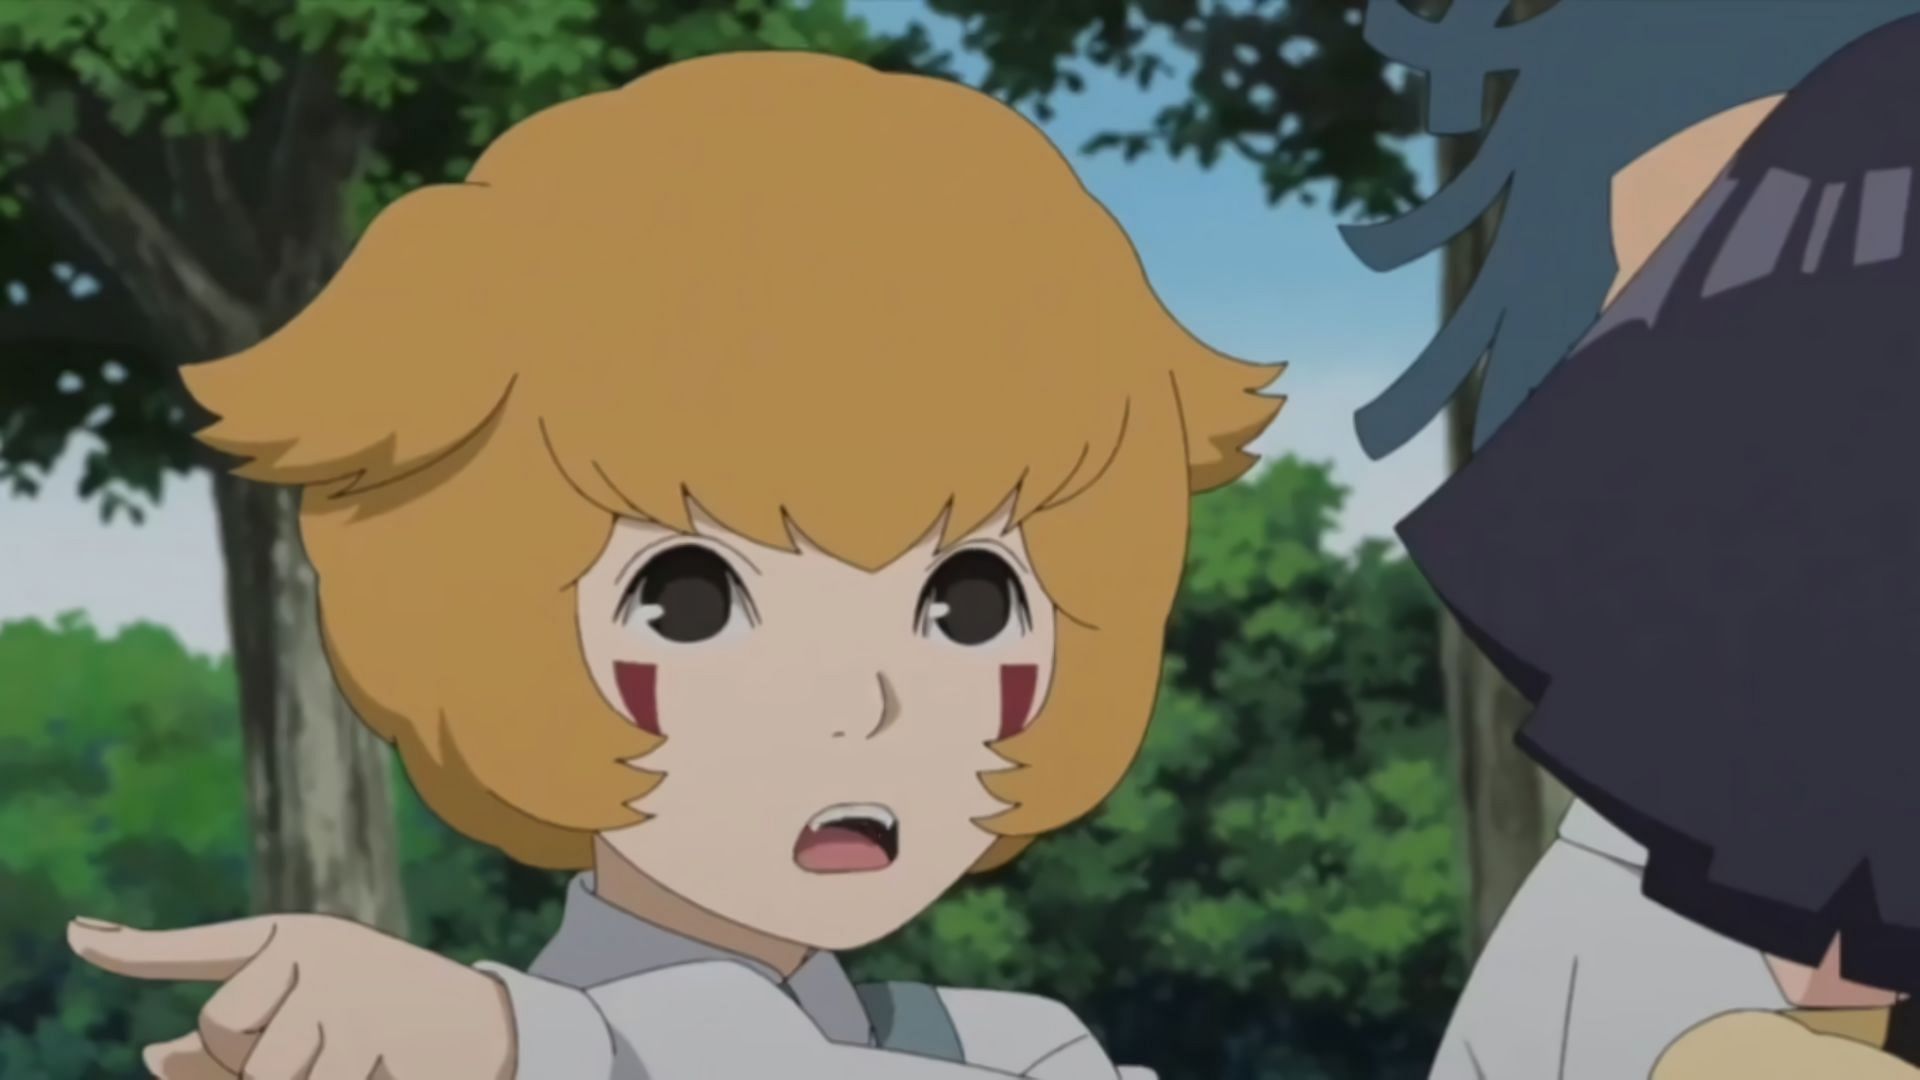 Mimi as seen in Boruto Episode 265 (Image via Studio Pierrot)